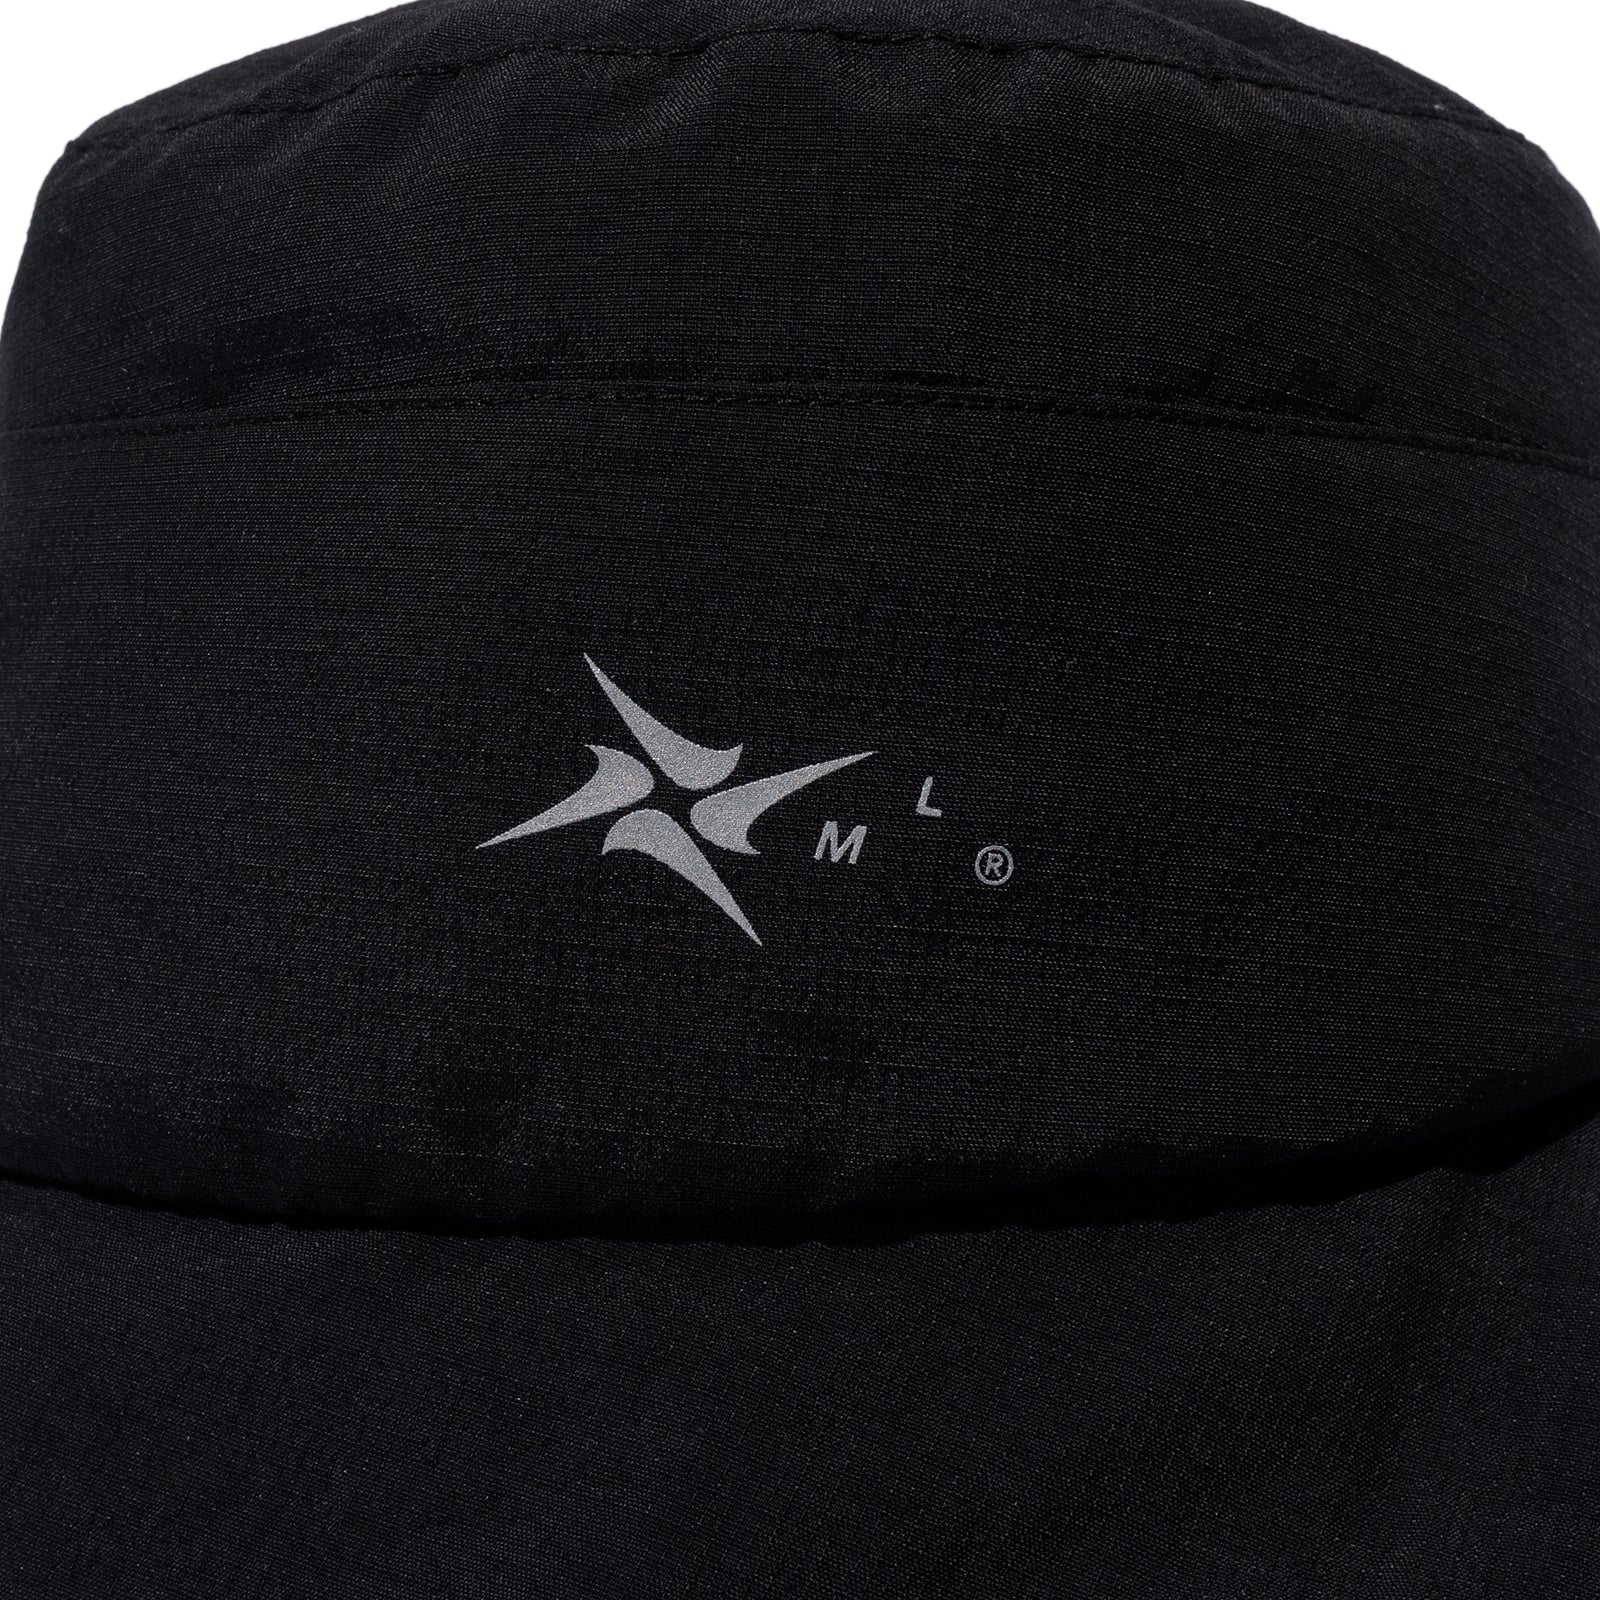 SUPPLEX BUCKET HAT (Black)